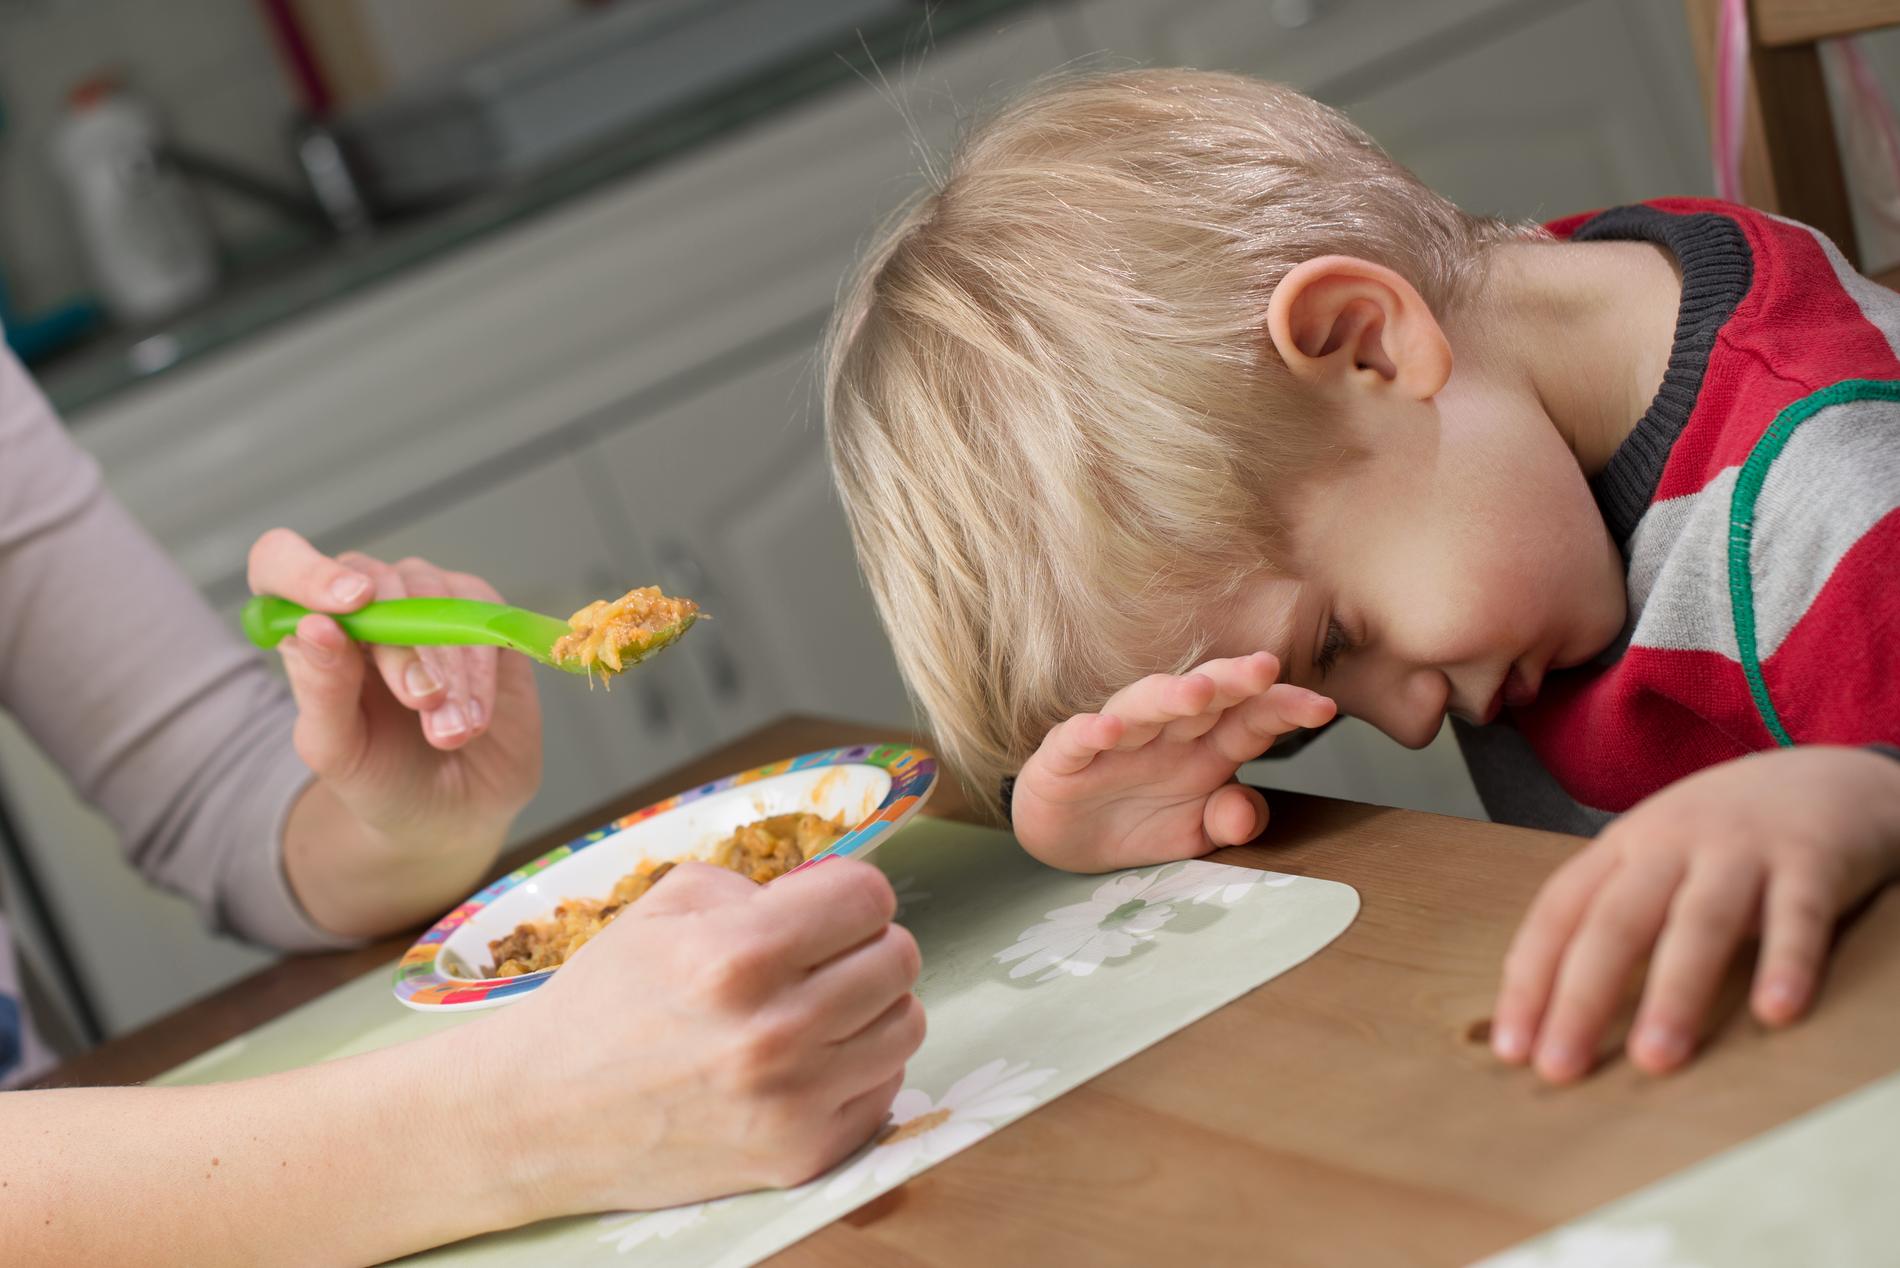 PRØV PÅ NYTT OG PÅ NYTT OG PÅ NYTT: Noen barn må eksponeres for ny mat opptil 20 ganger før det liker det som blir servert, forklarer ernæringsfysiolog Elisabeth Lind Melbye.